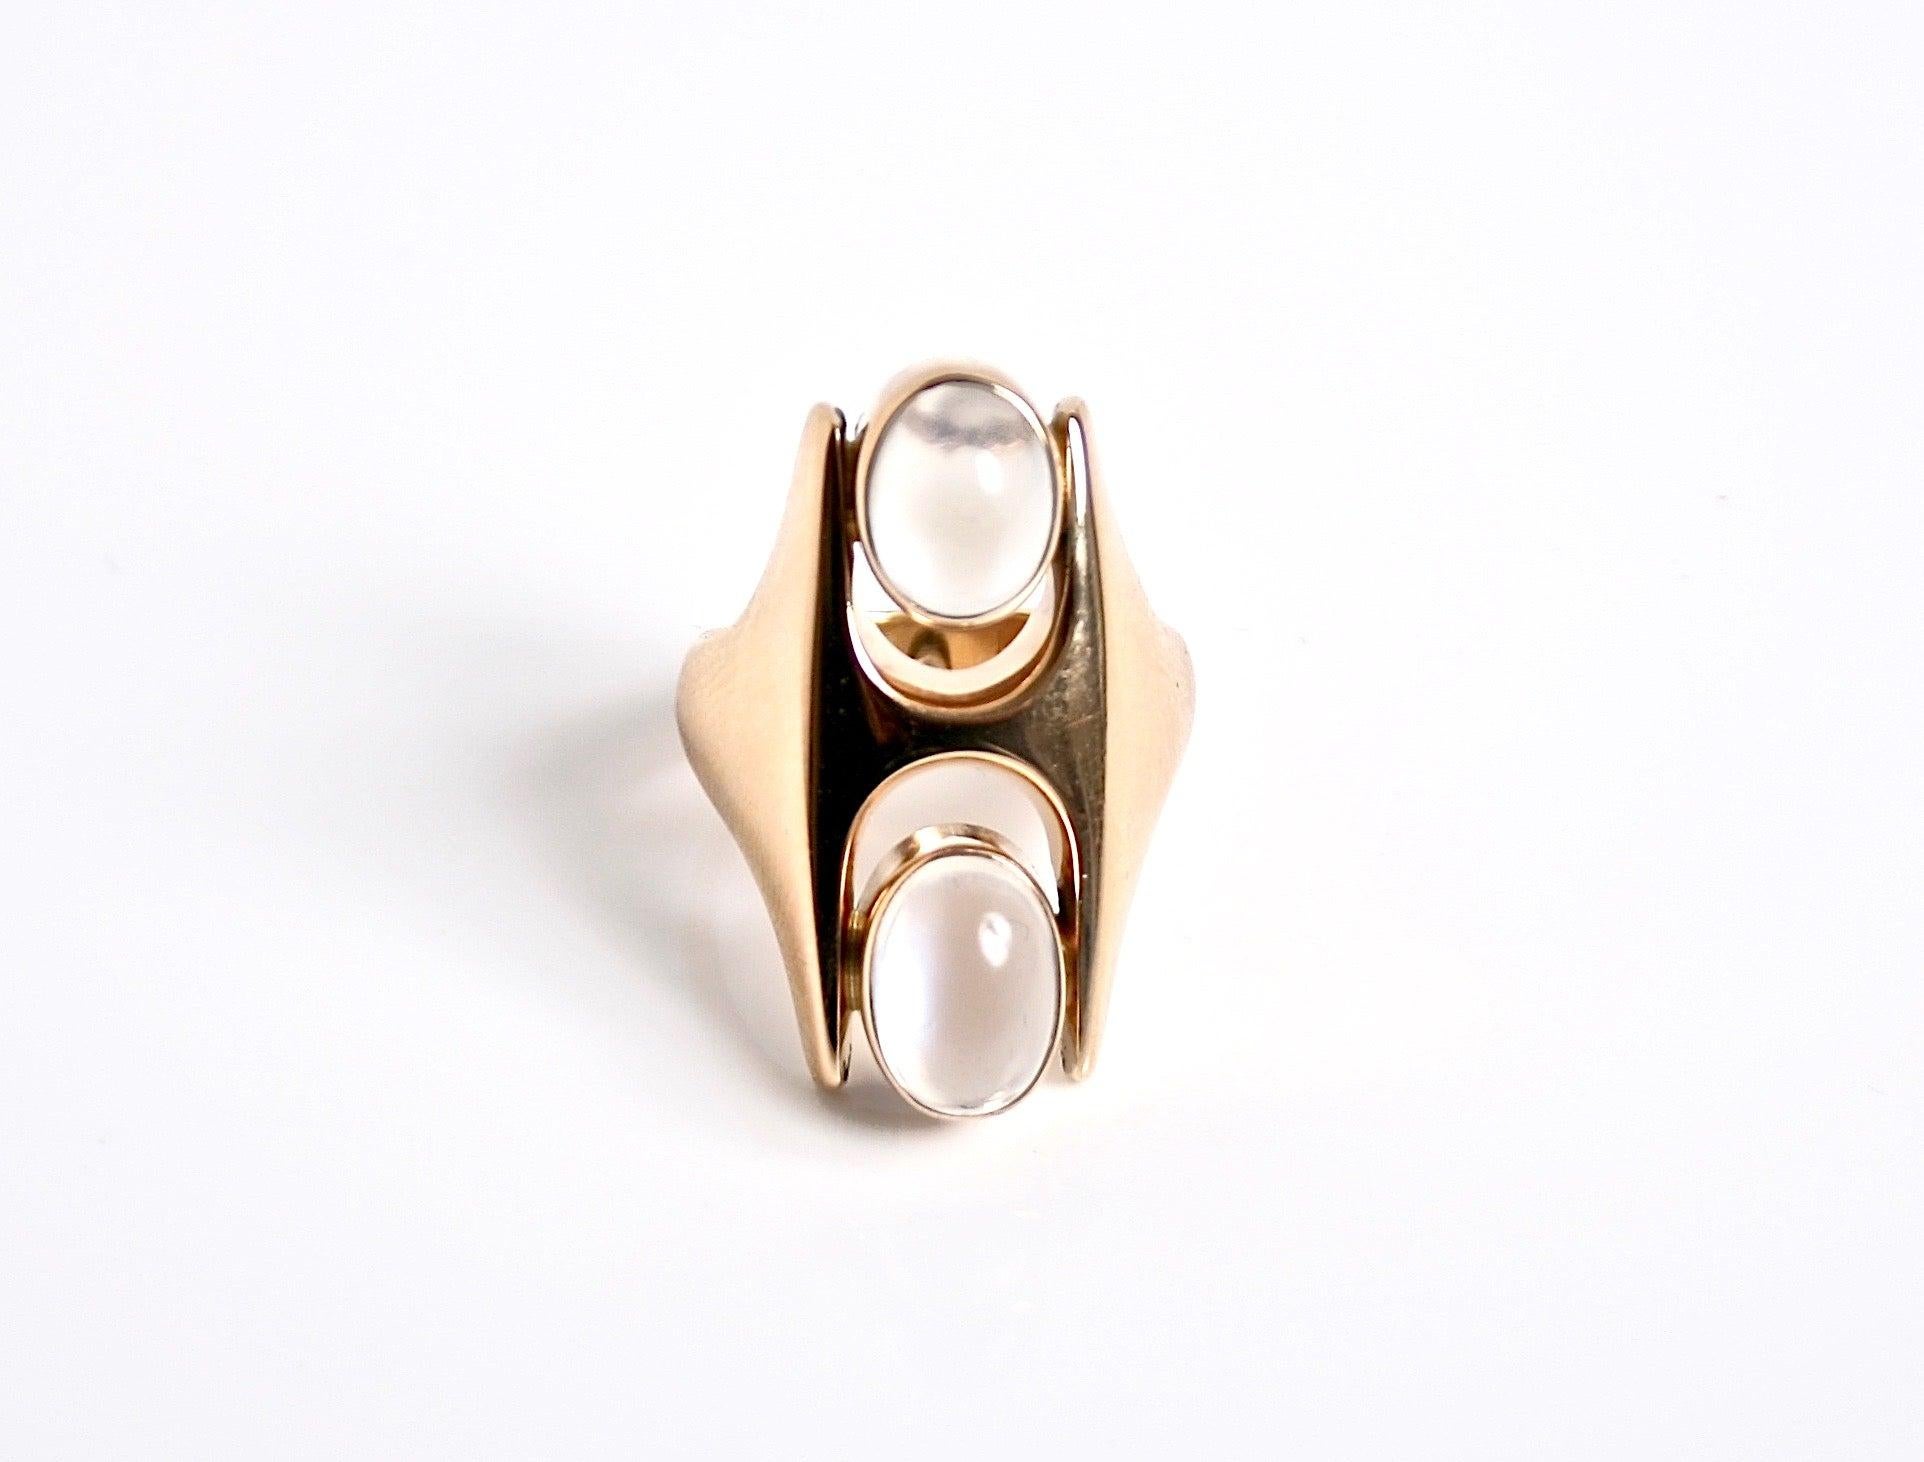 Rare Georg Jensen 18 Karat Gold & two cabochon Moonstone Ring designed by Henning Koppel Denmark c1967
Design number 845
Size UK O